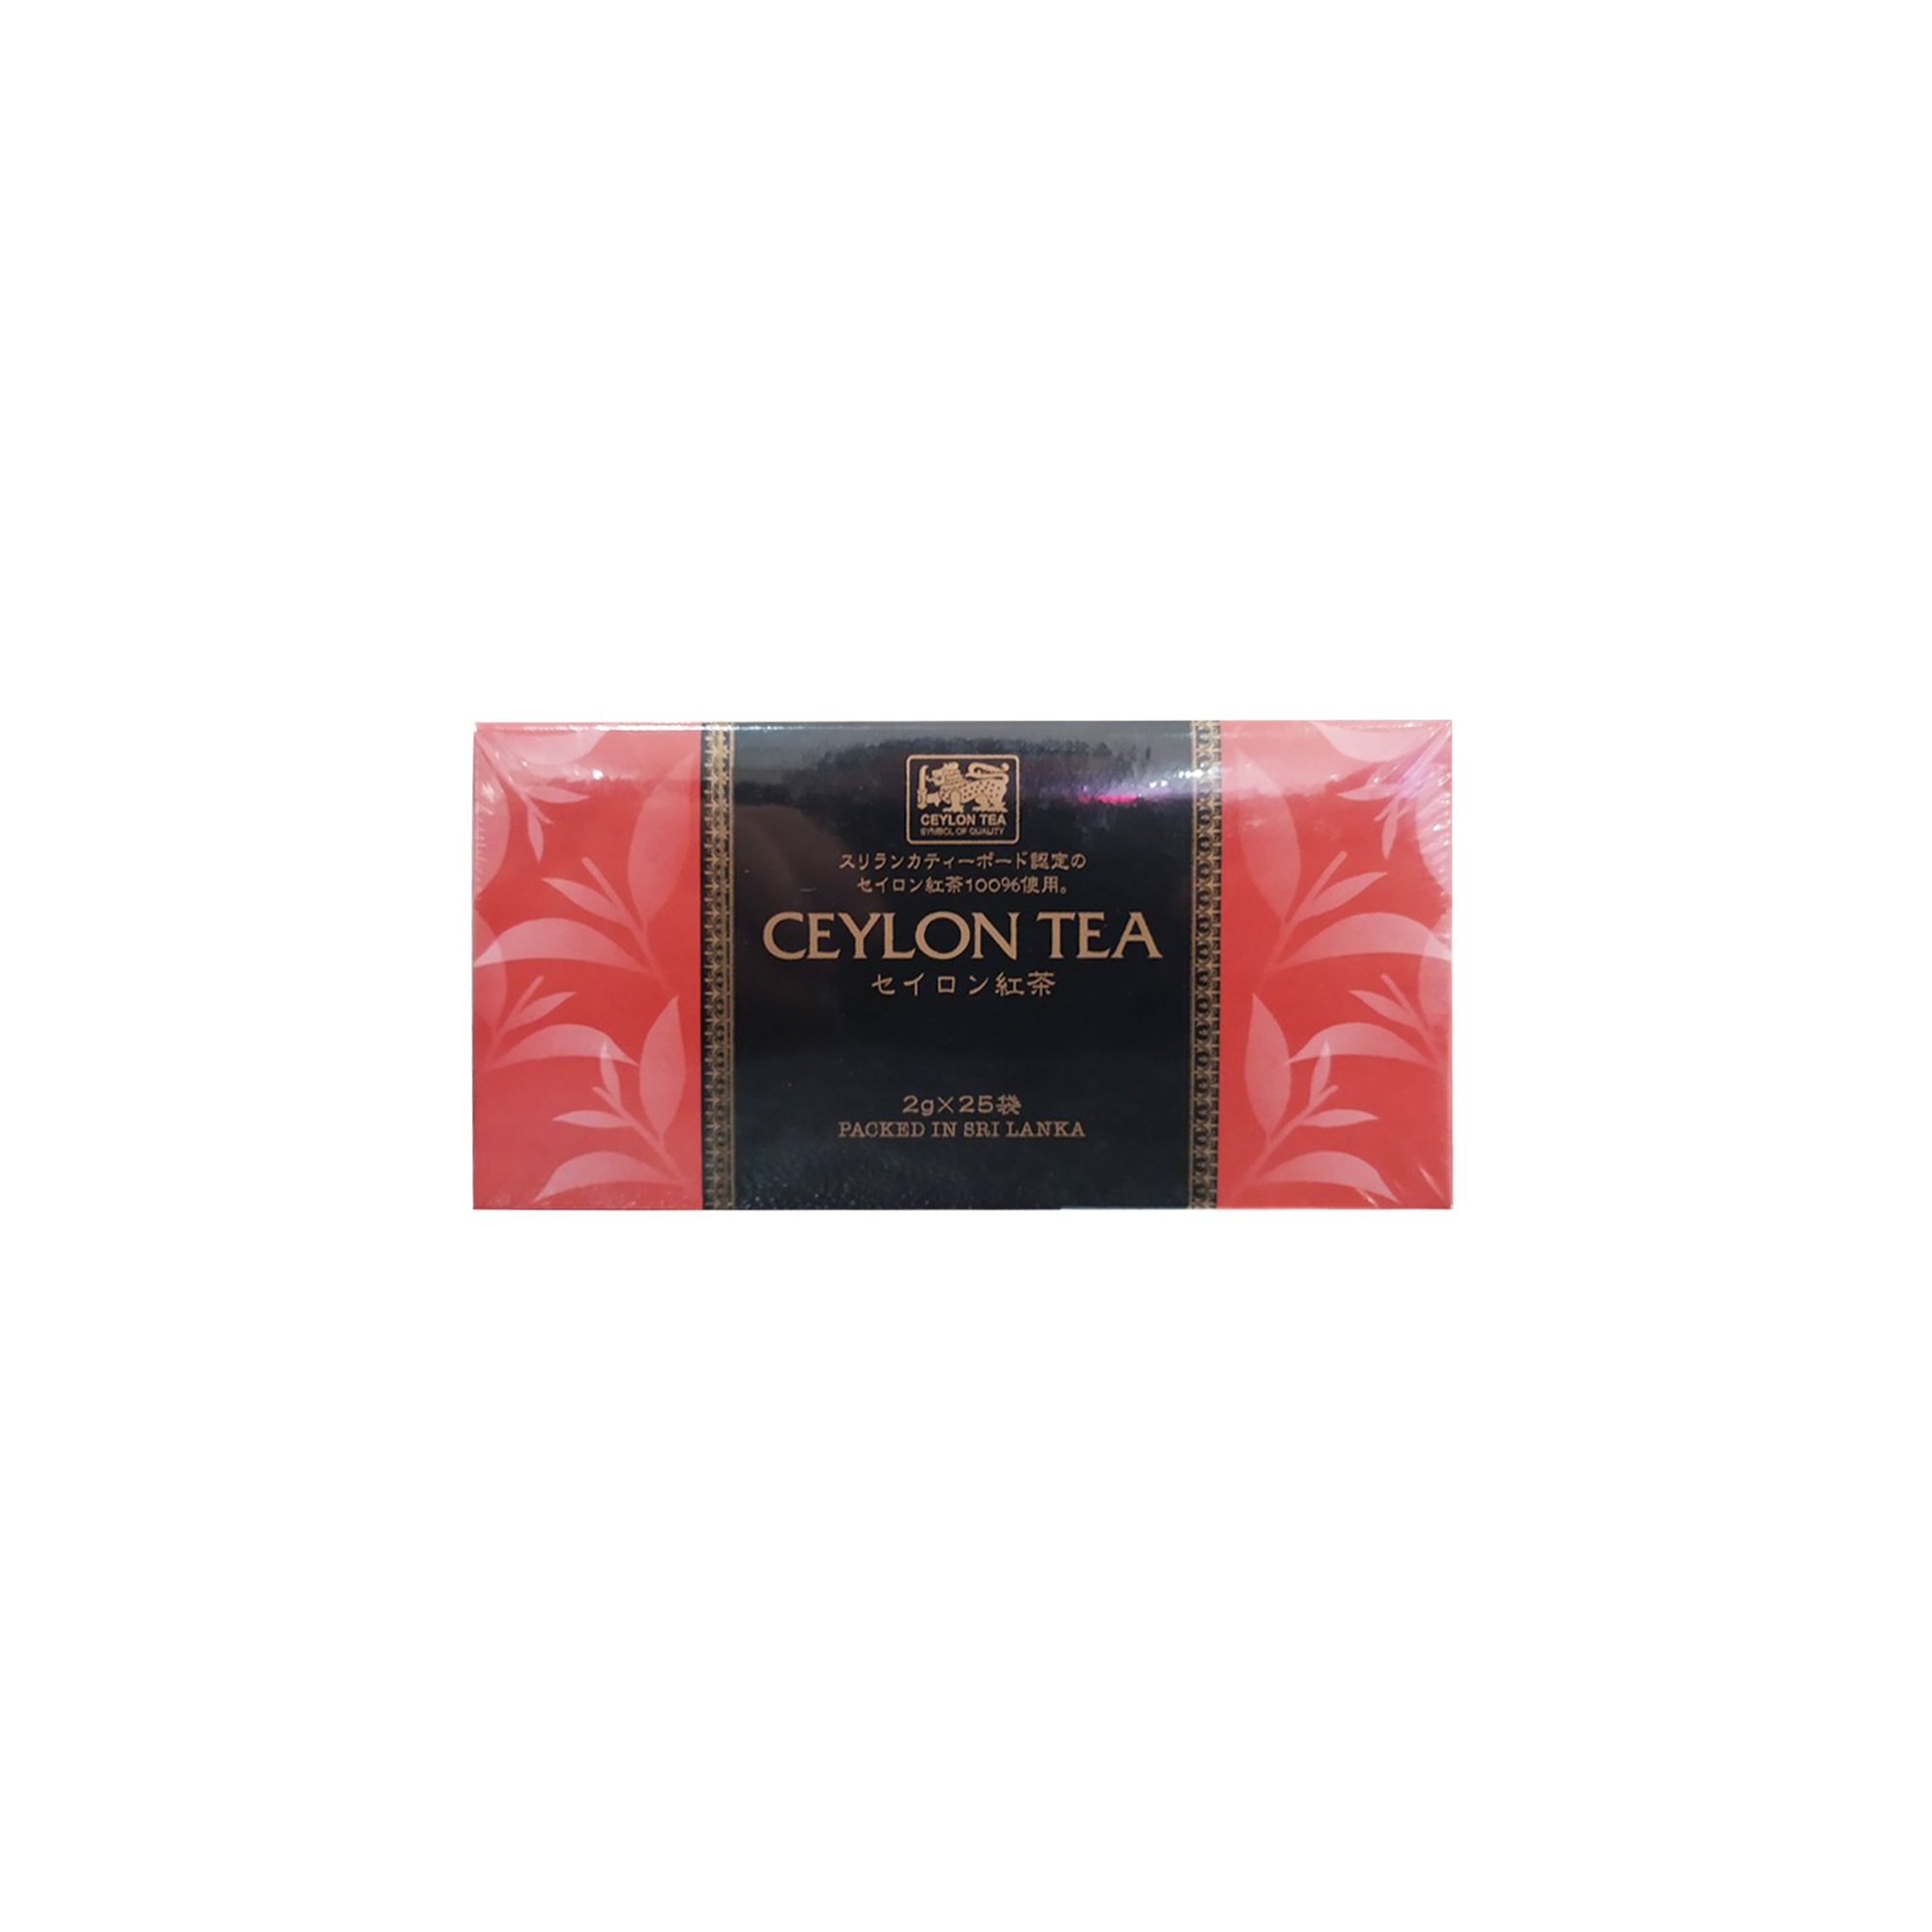 Trà đen túi lọc Ceylon 50g - hàng nội địa Nhật Bản